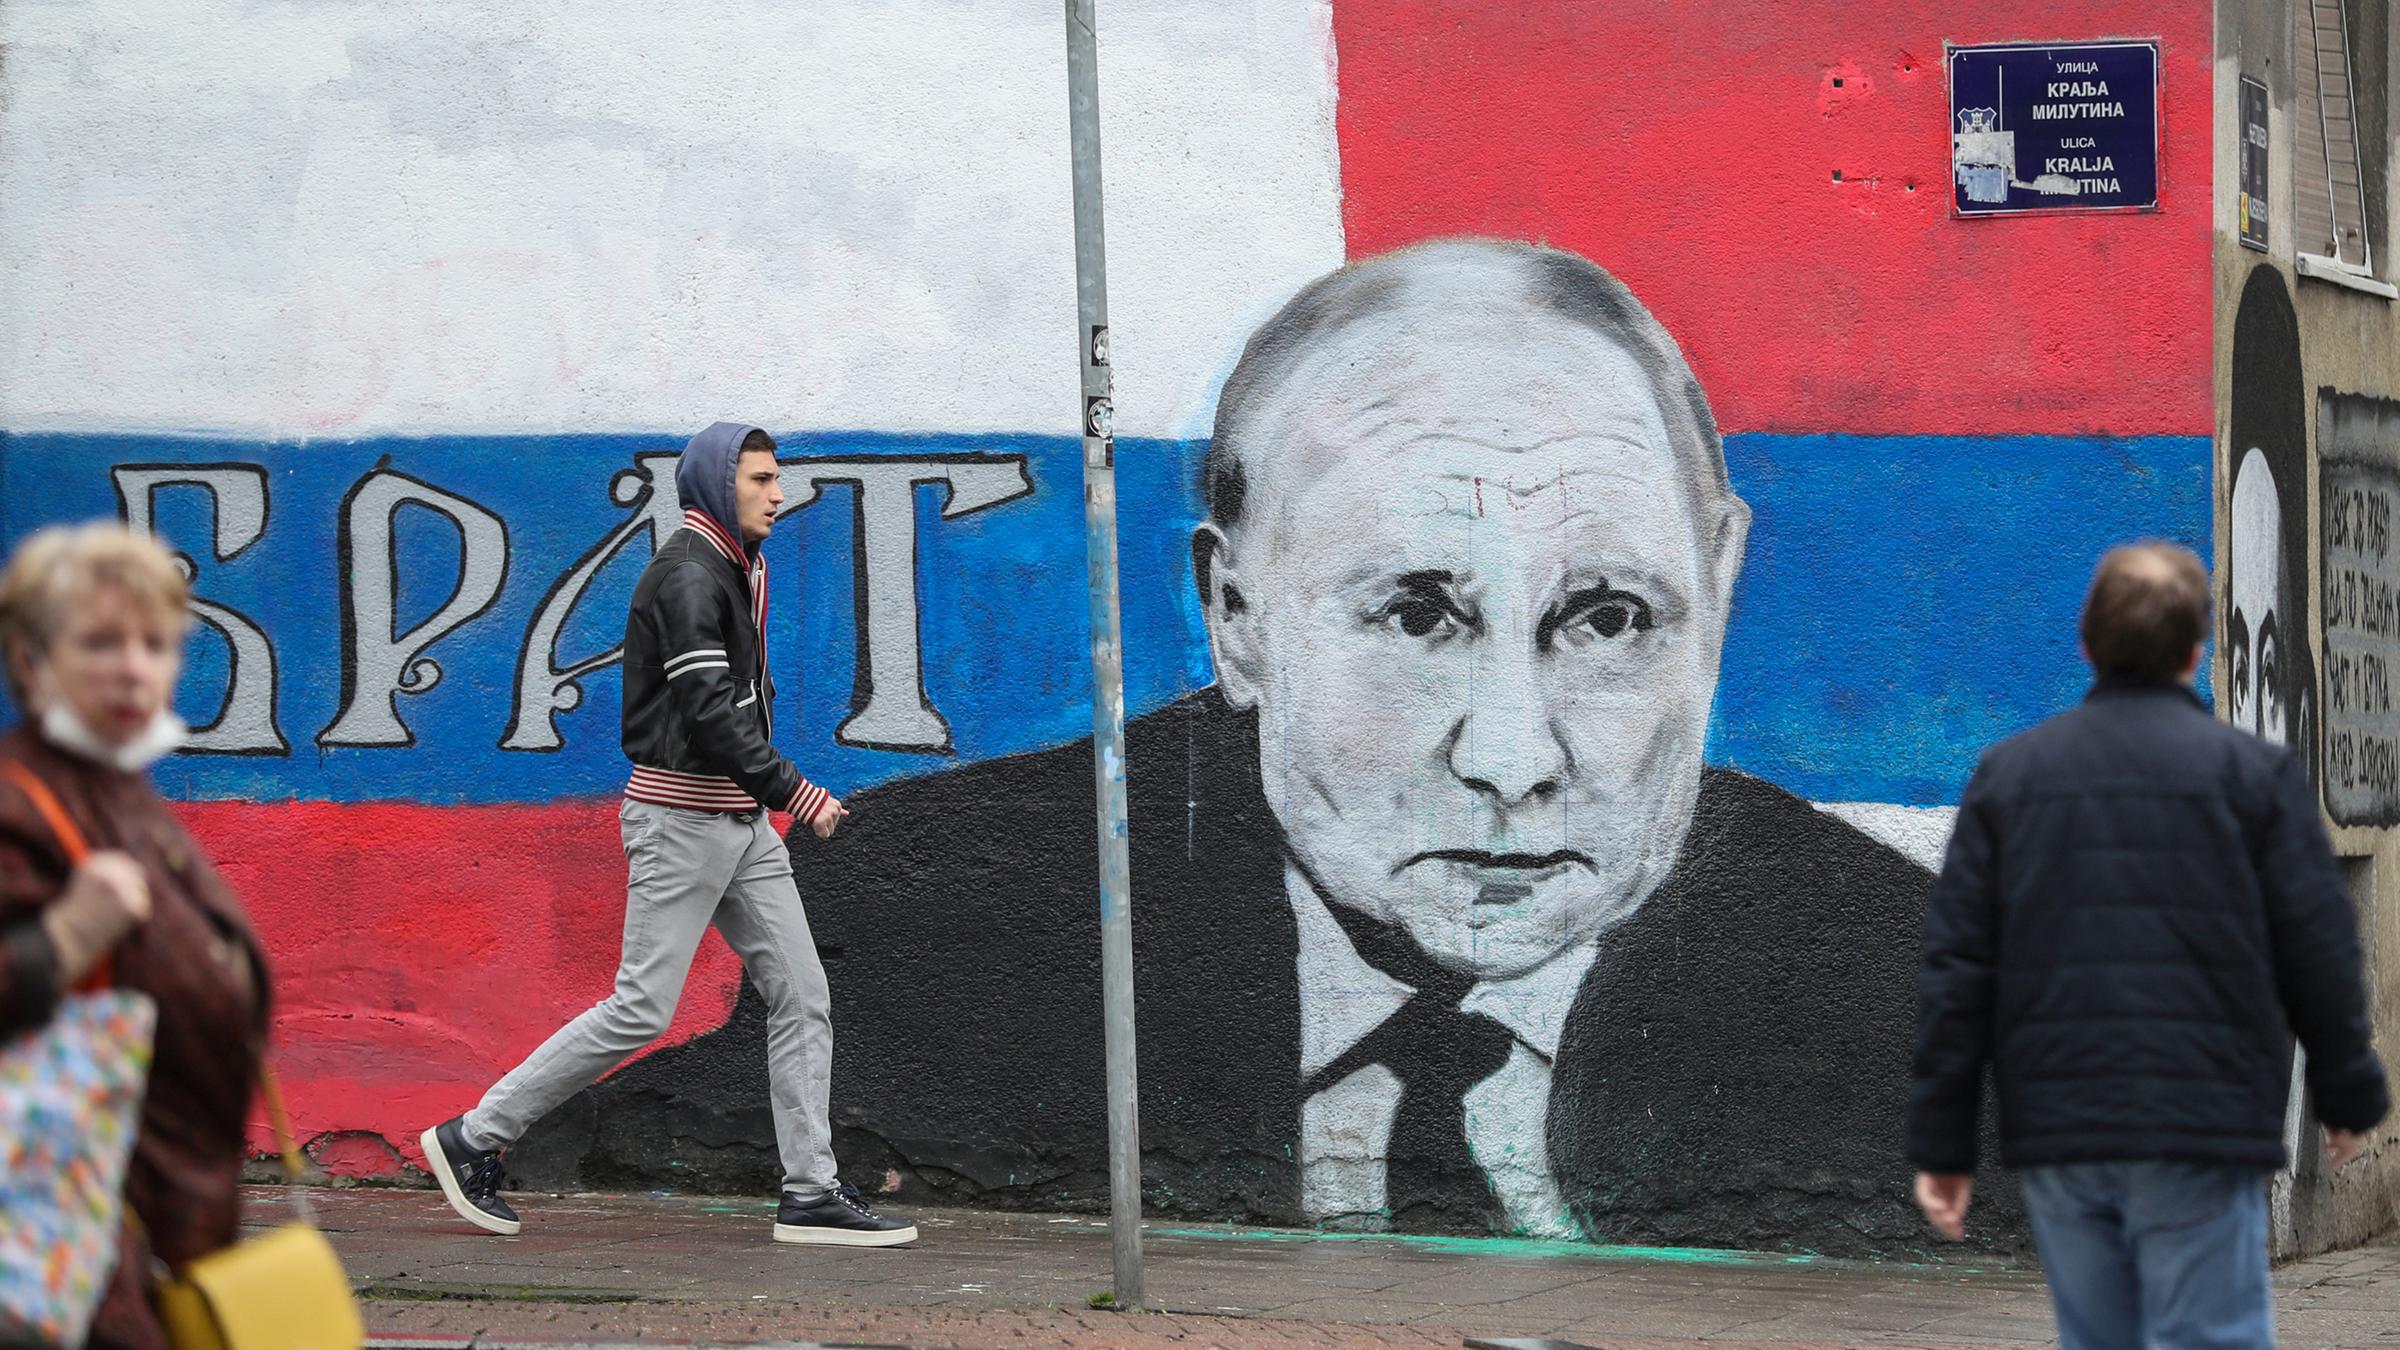 Menschen in Belgrad gehen neben einem Graffiti, das den russischen Präsidenten Wladimir Putin darstellt, vorbei.